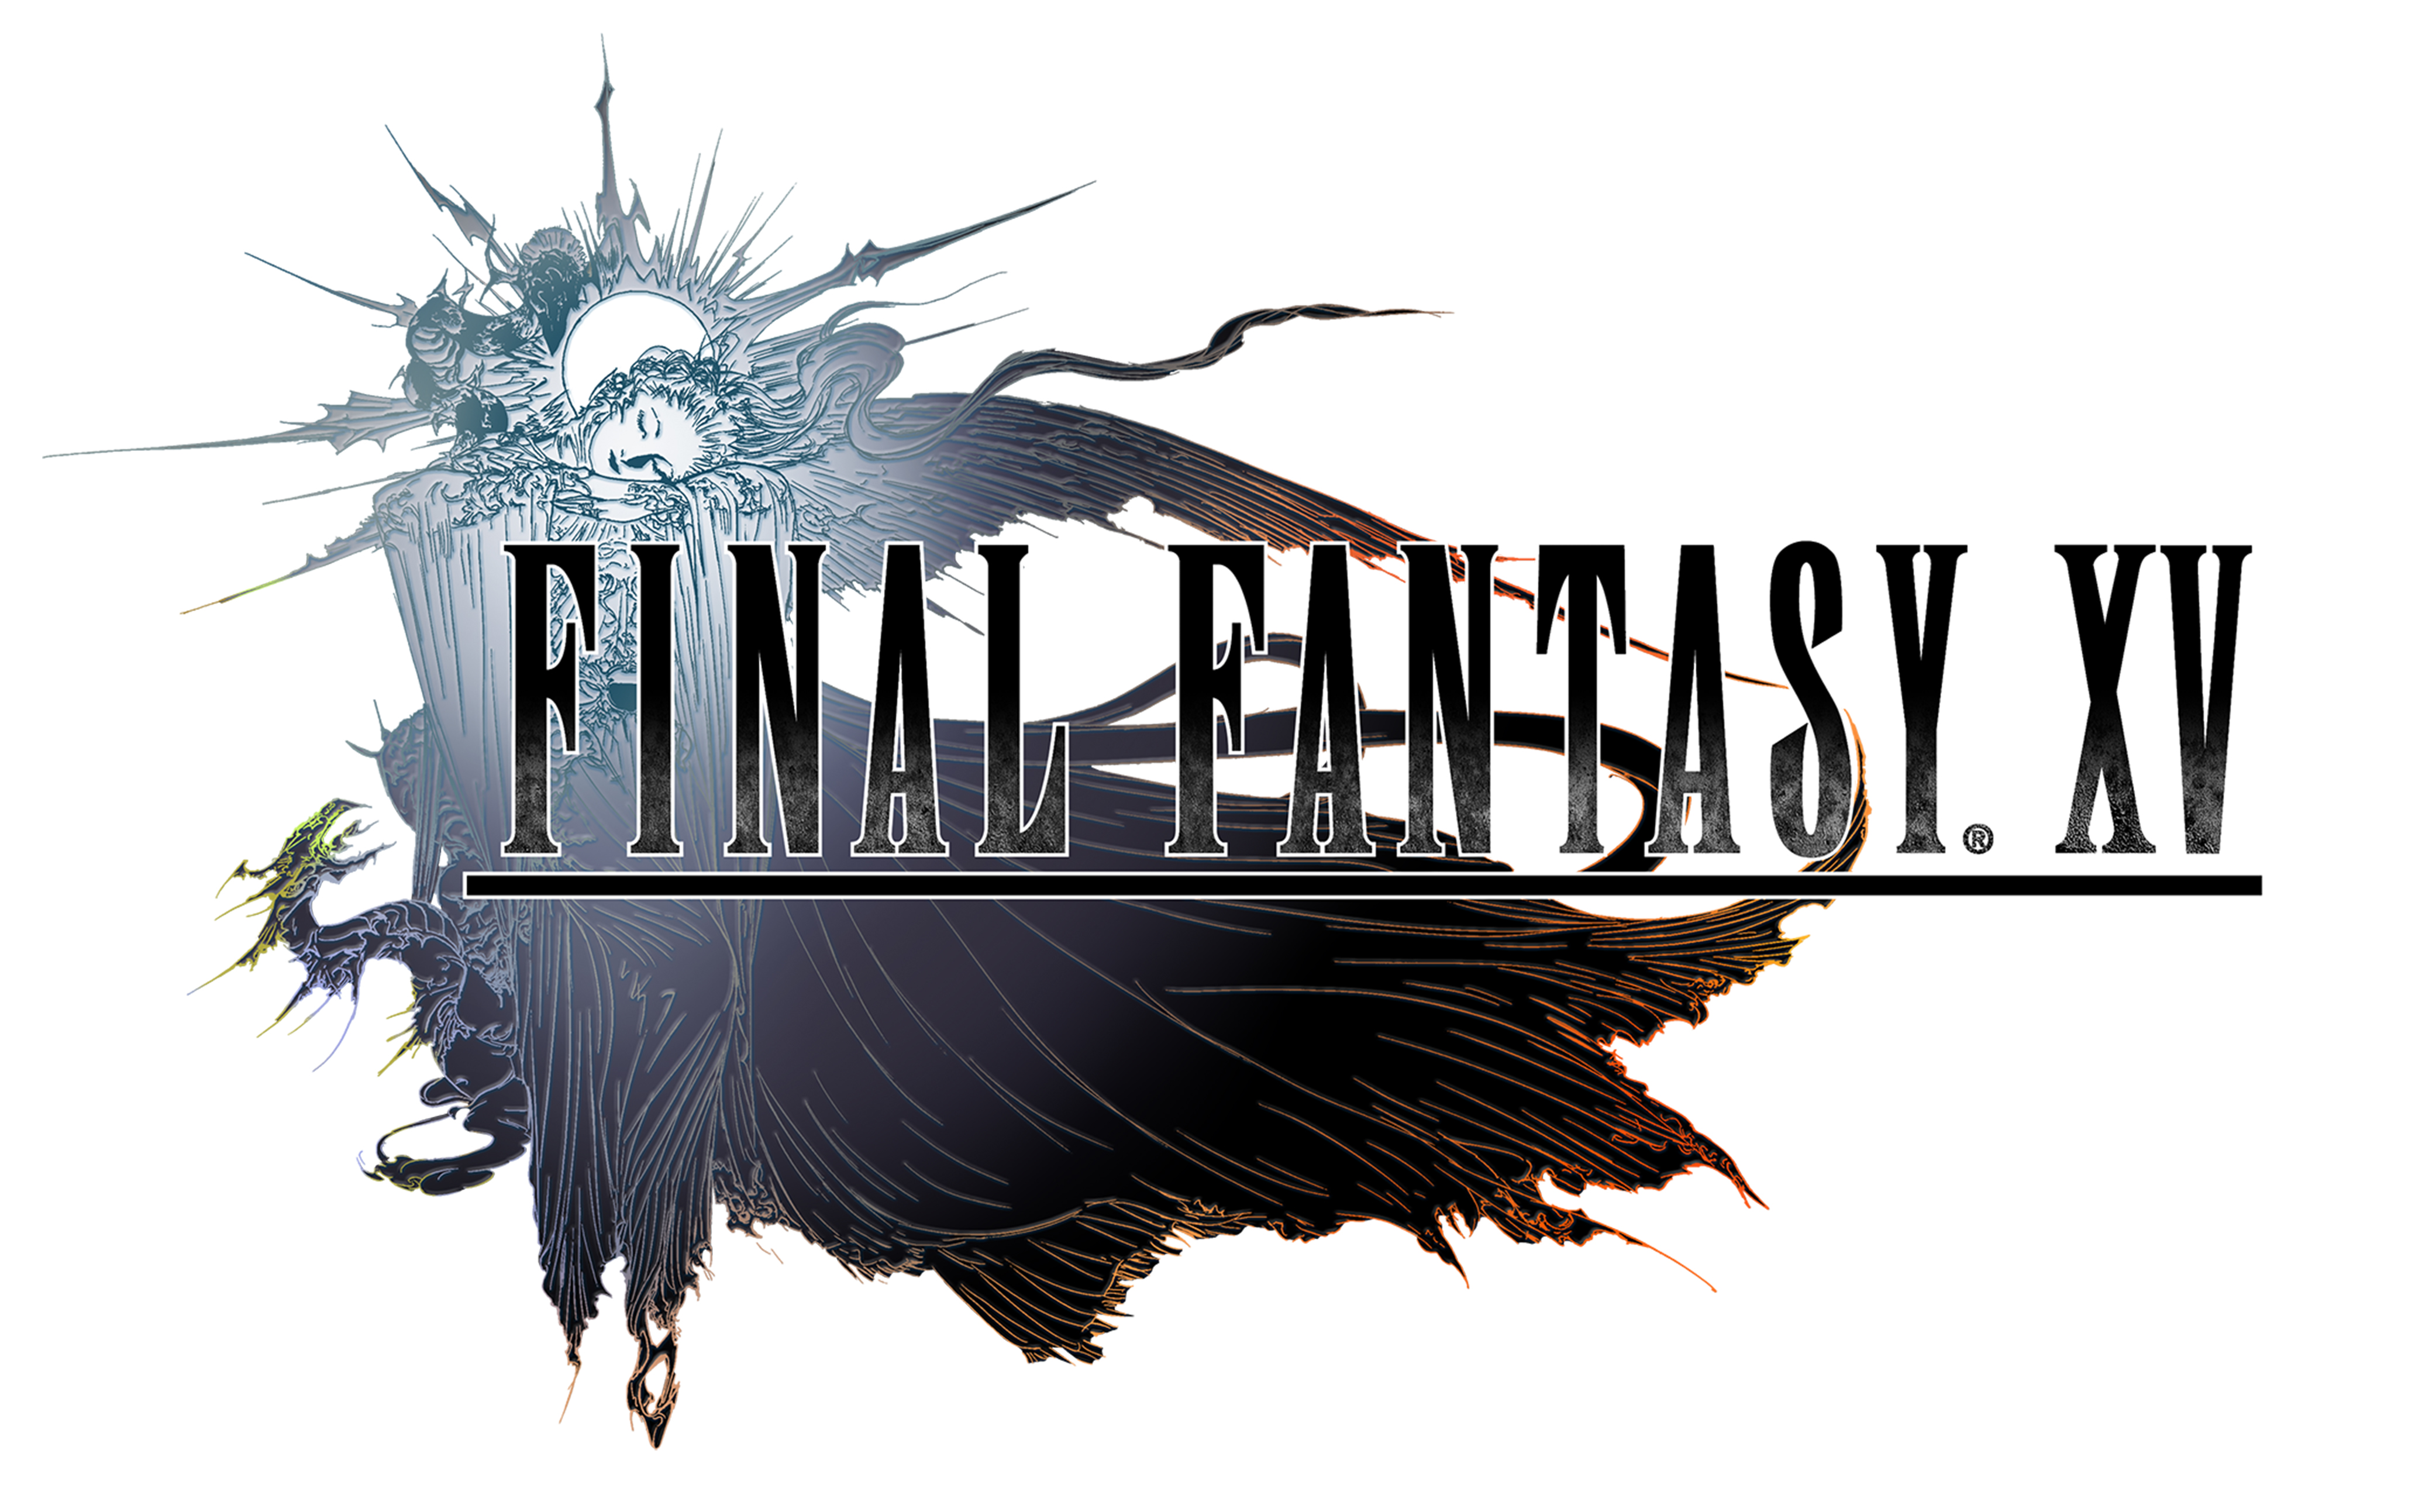 حداقل سیستم مورد نیاز و تاریخ انتشار نسخه‌ی ویندوز Final Fantasy XV اعلام شد